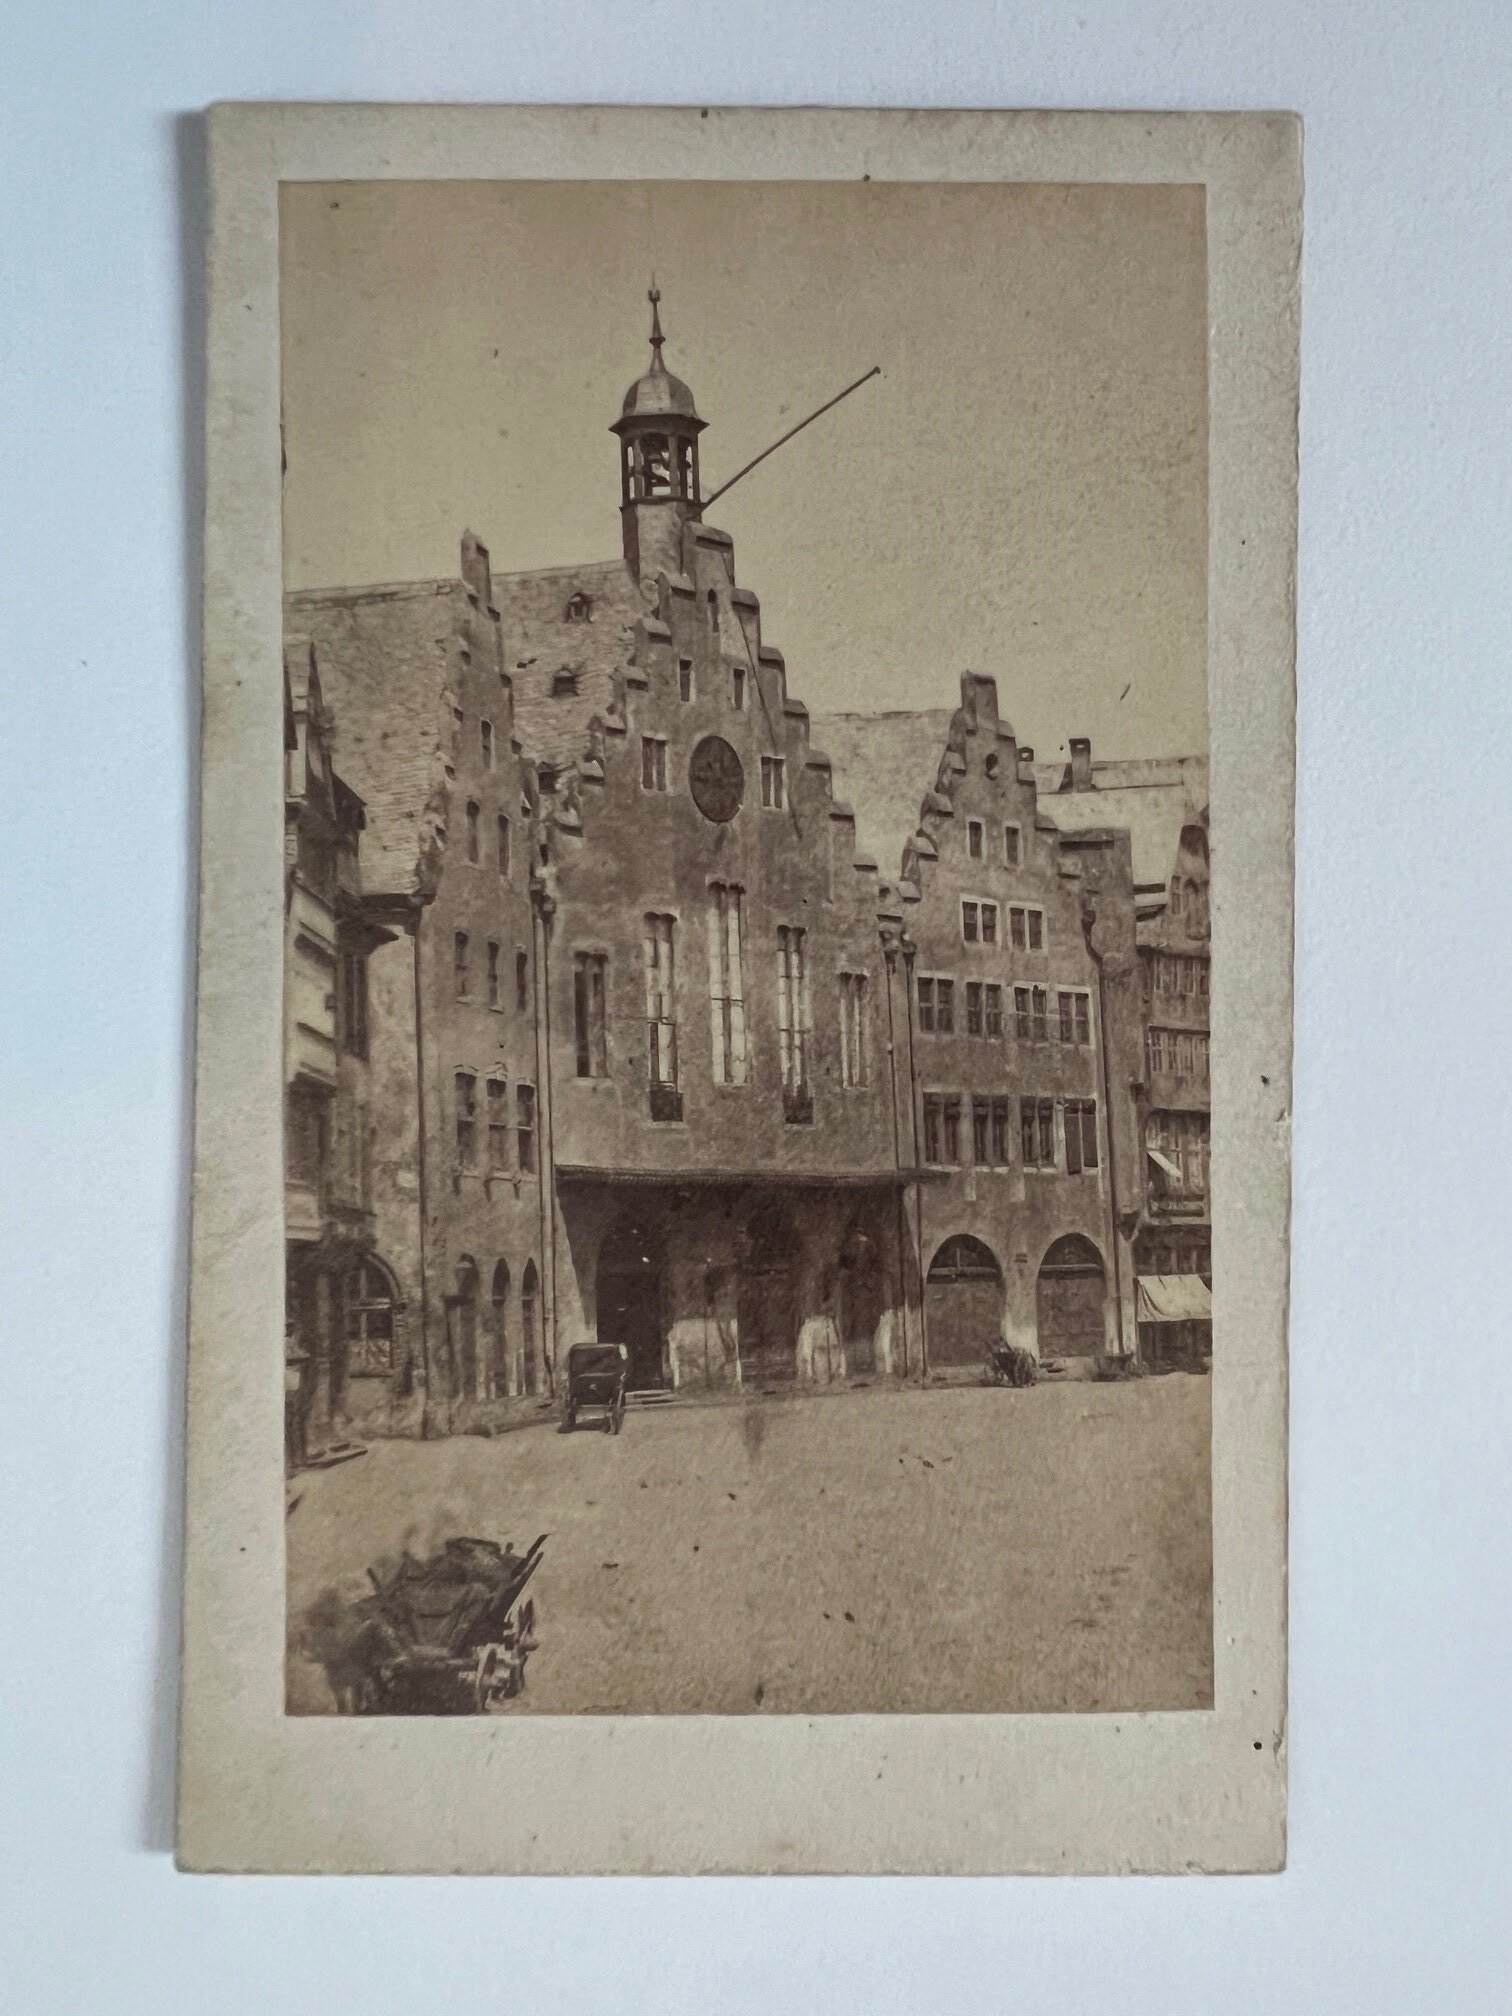 CdV, Unbekannter Fotograf, Frankfurt, Römerberg, ca. 1865 (Taunus-Rhein-Main - Regionalgeschichtliche Sammlung Dr. Stefan Naas CC BY-NC-SA)